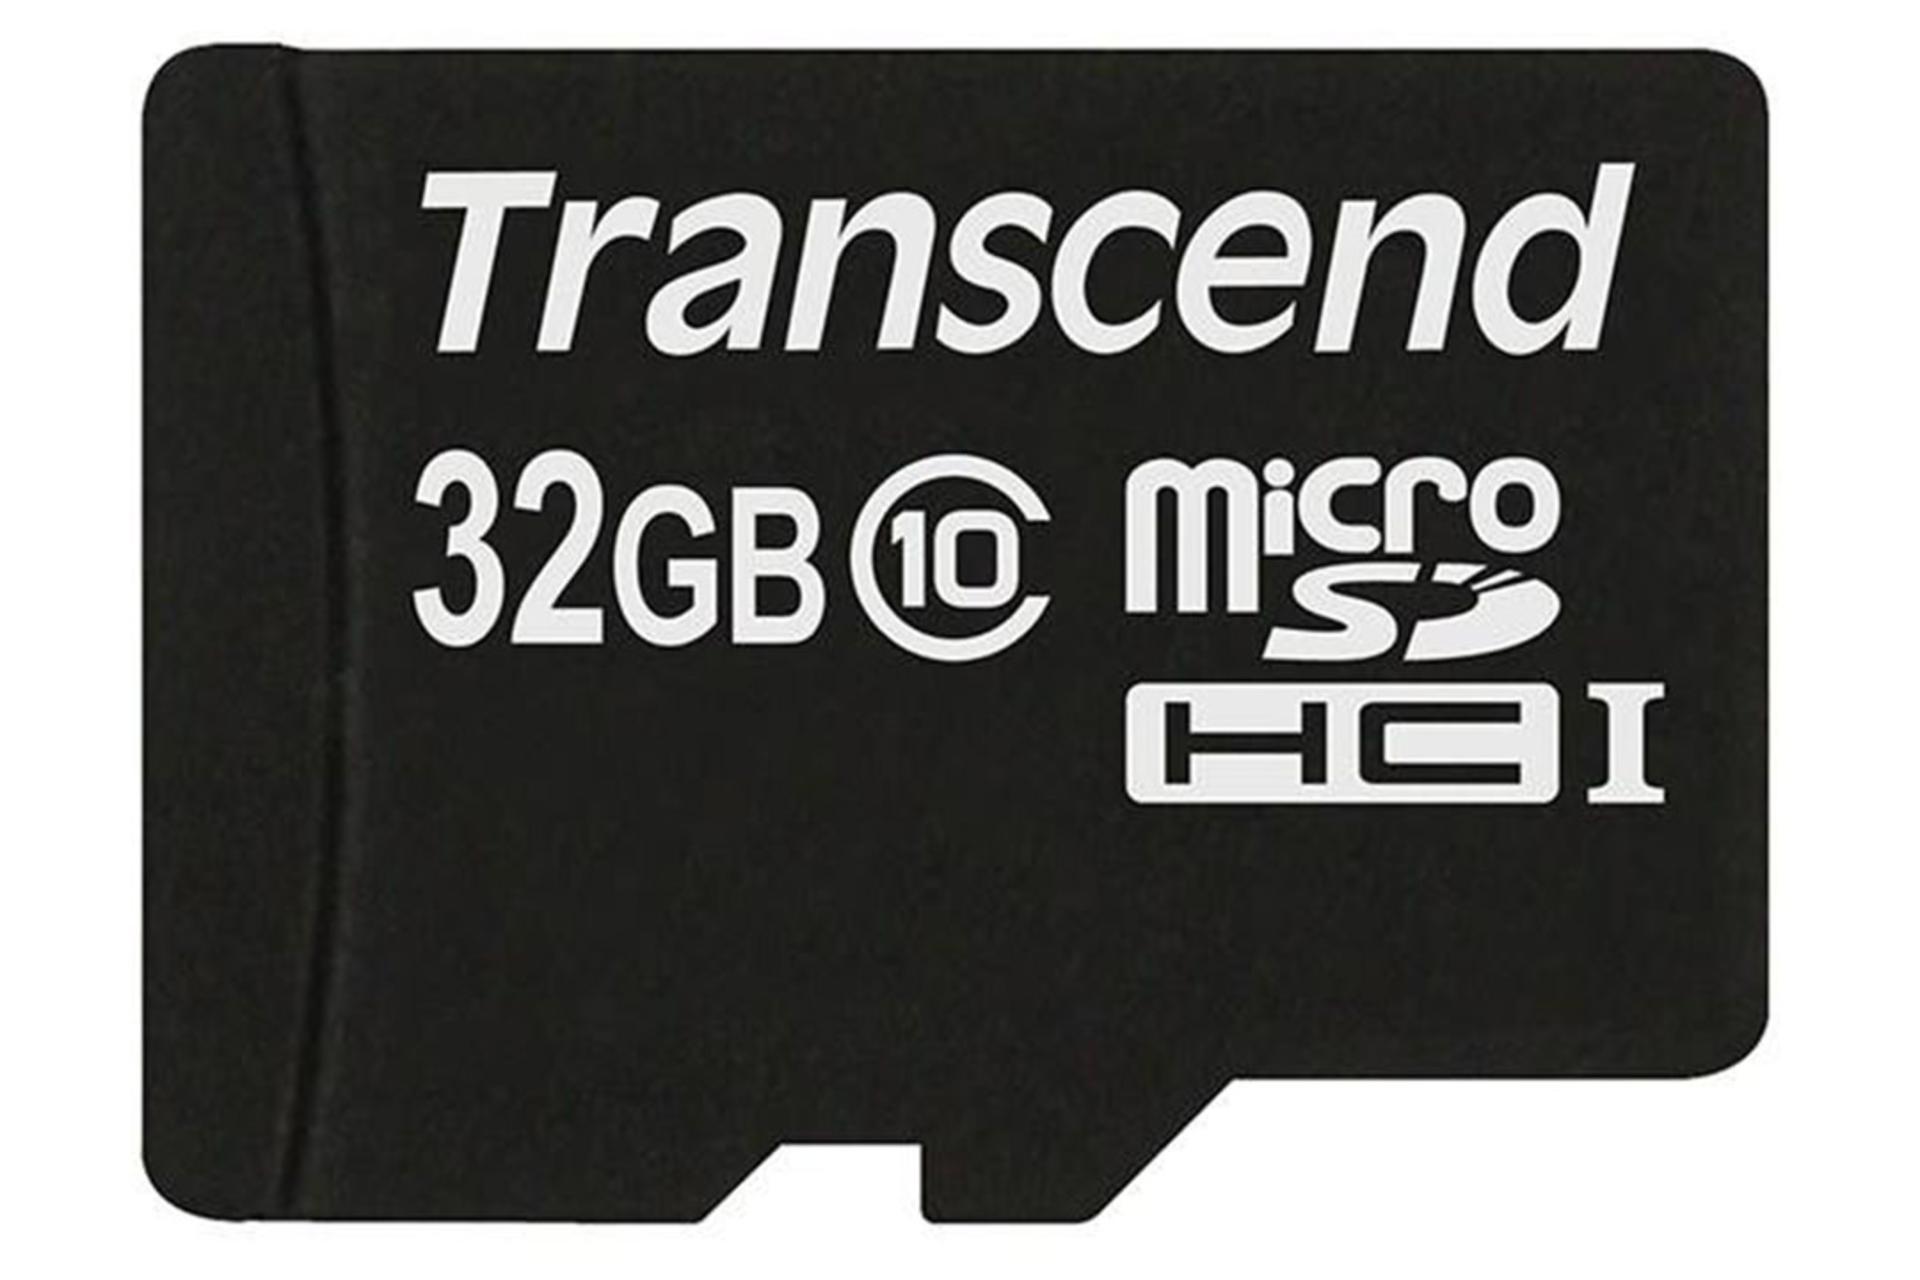 Transcend Premium microSDHC Class 10 UHS-I U1 32GB